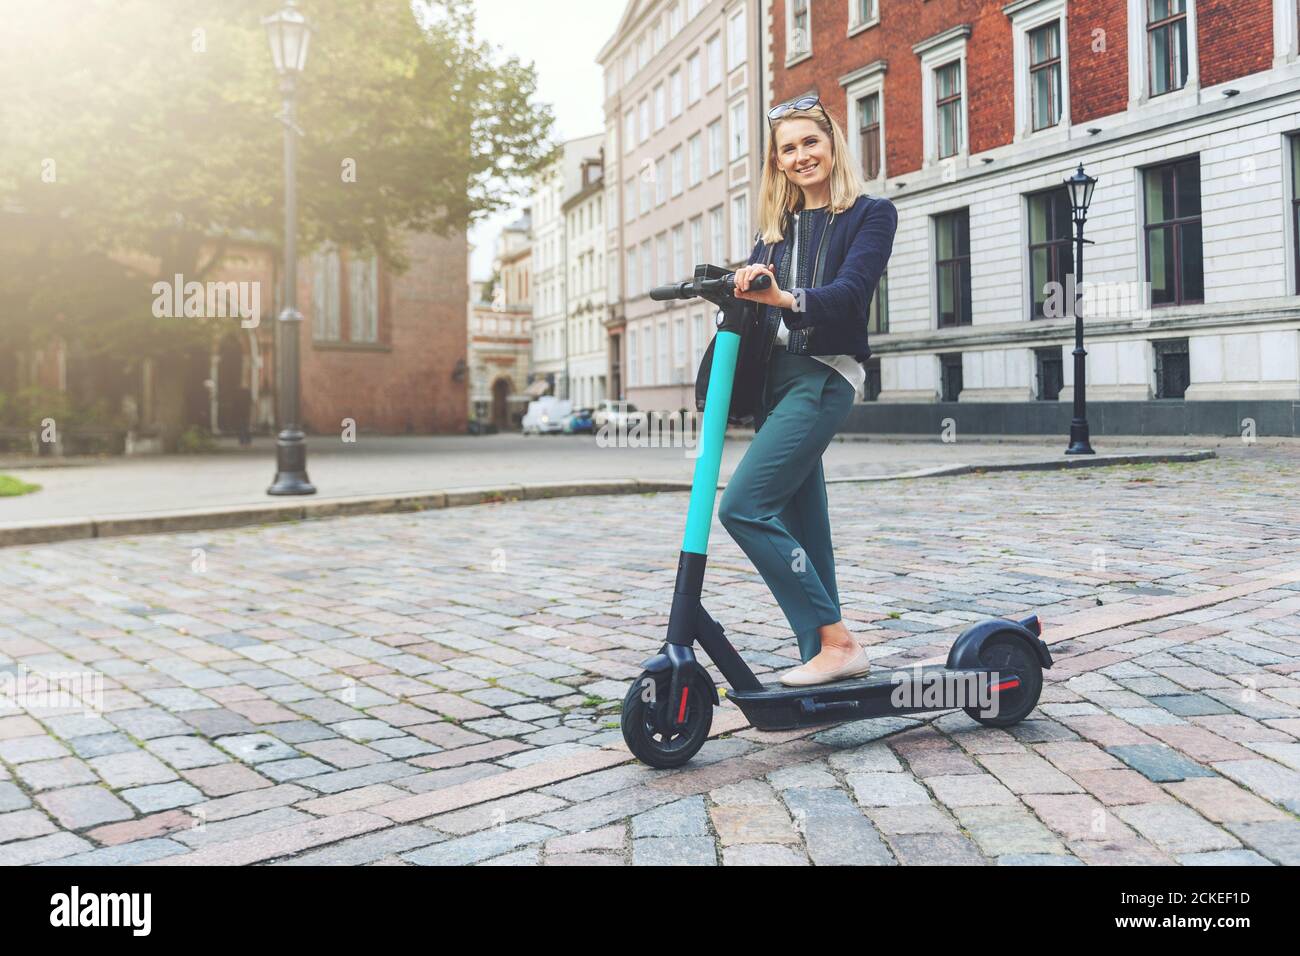 Umweltfreundlicher Transport - junge und schöne Geschäftsfrau fährt Elektroroller in den Straßen der Stadt Stockfoto